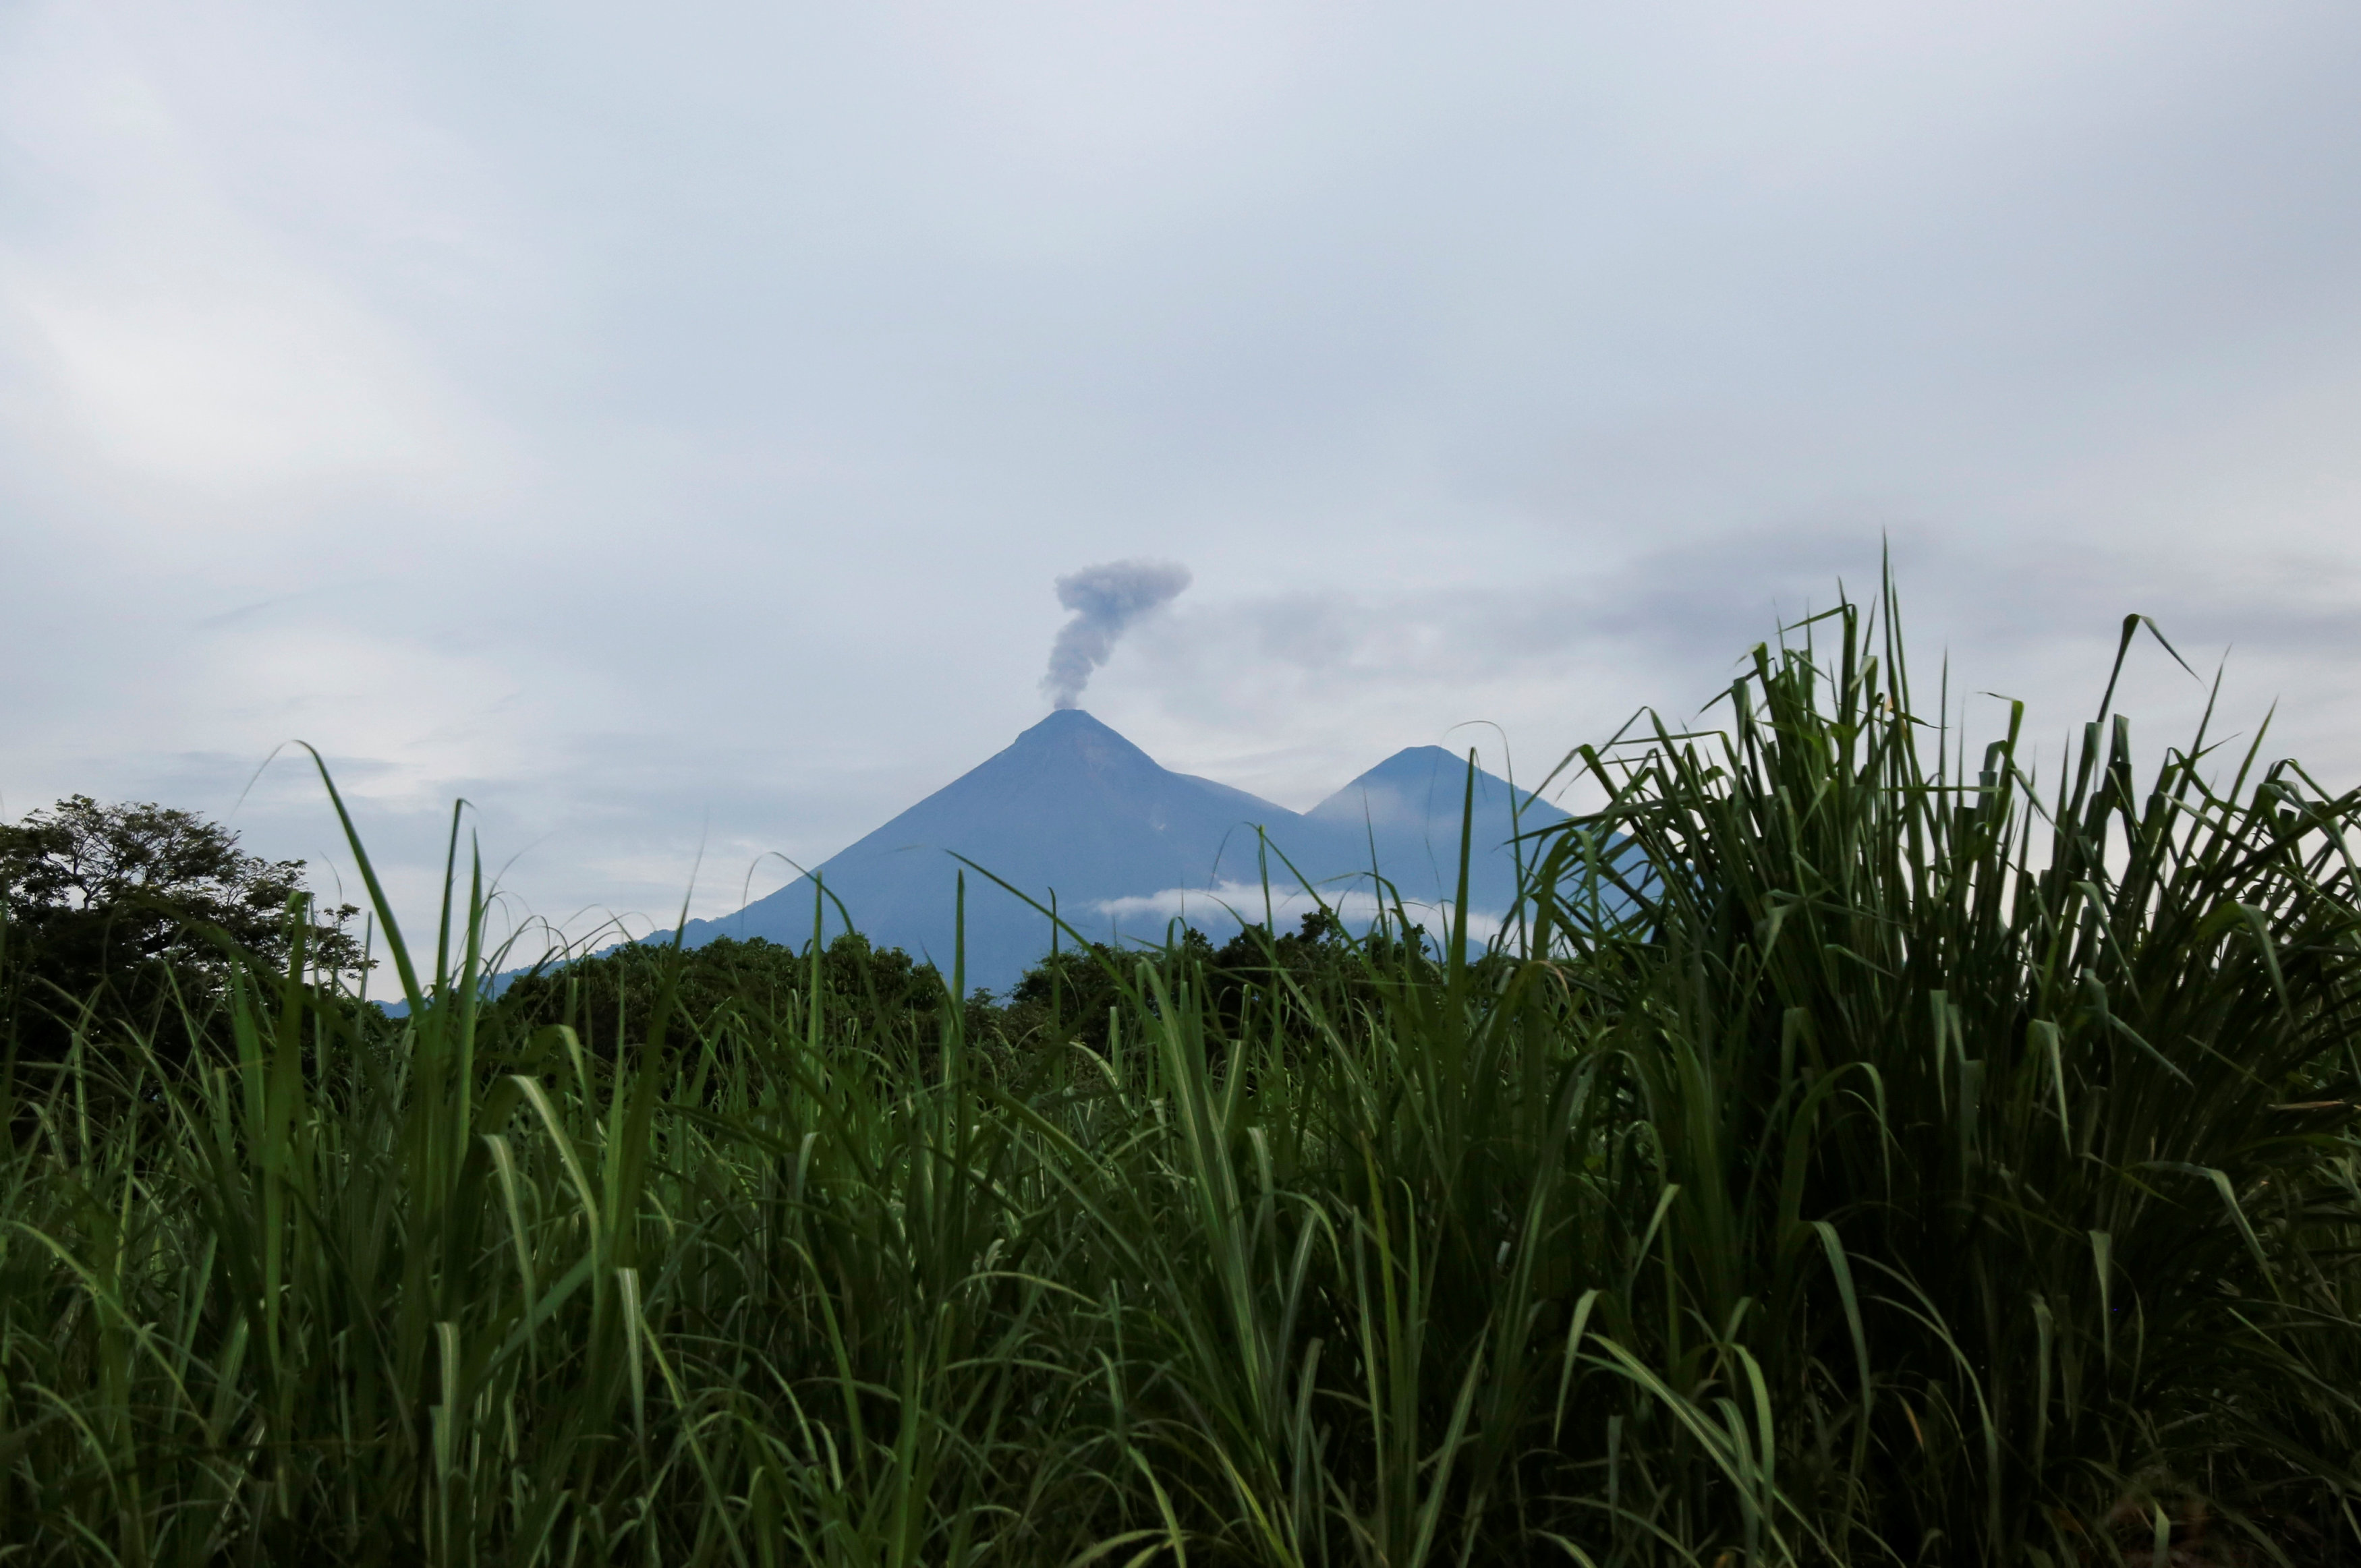 La ONU activa mecanismos para atender emergencia por erupción en Guatemala